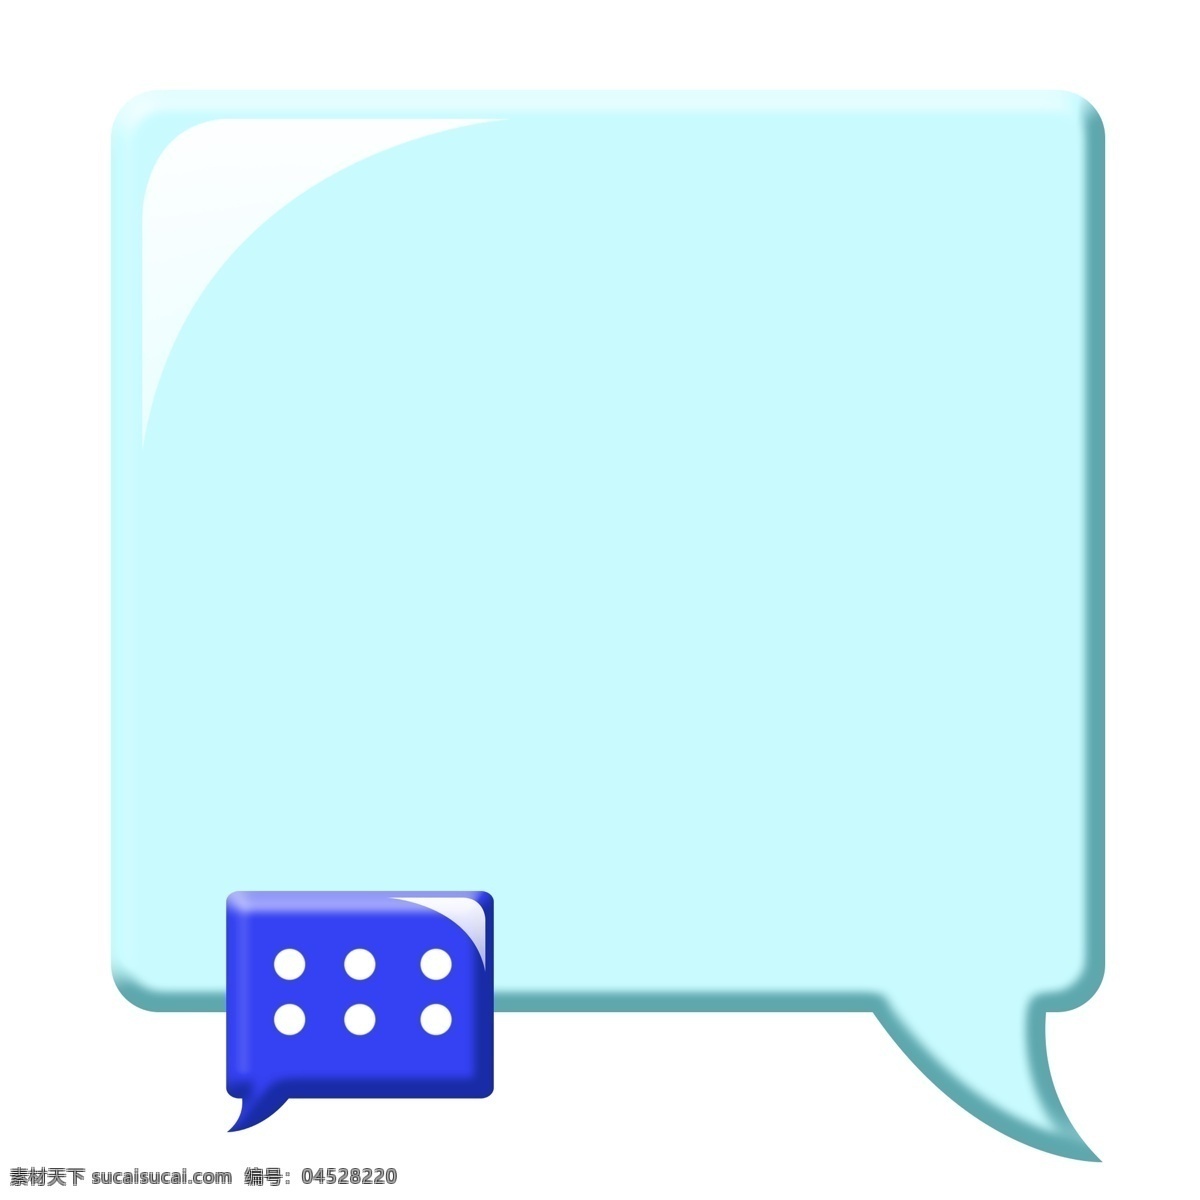 蓝色 对话框 边框 蓝色的边框 对话框边框 卡通边框 美丽边框 漂亮边框 小物边框 物品边框